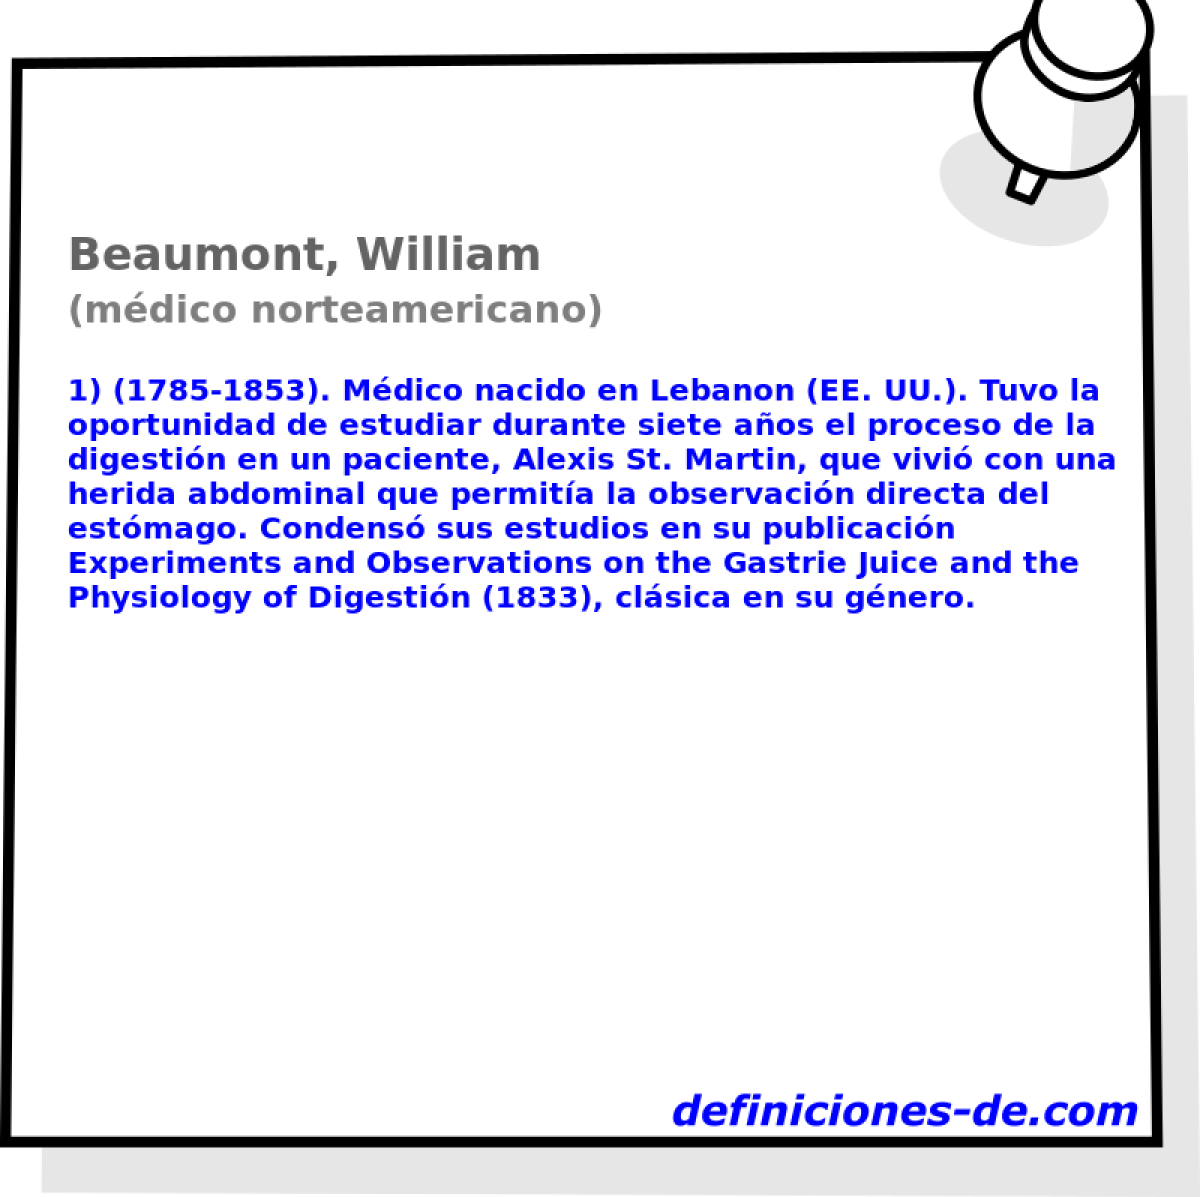 Beaumont, William (mdico norteamericano)